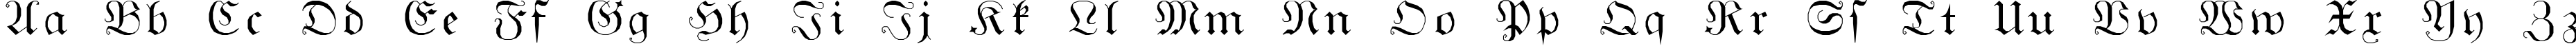 Пример написания английского алфавита шрифтом GothicG